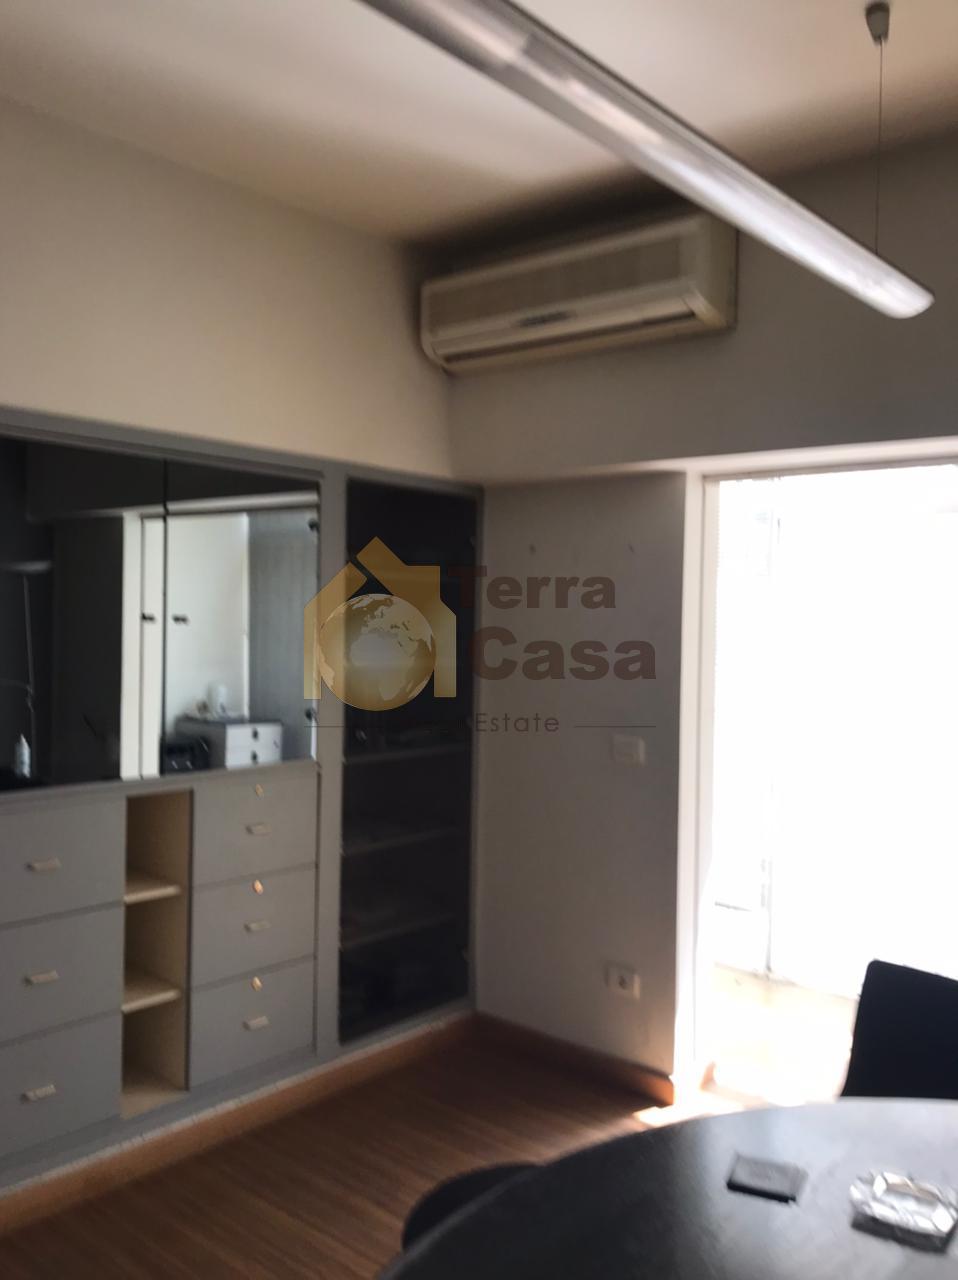 apartment in jal el dib for sale, one unit per floor